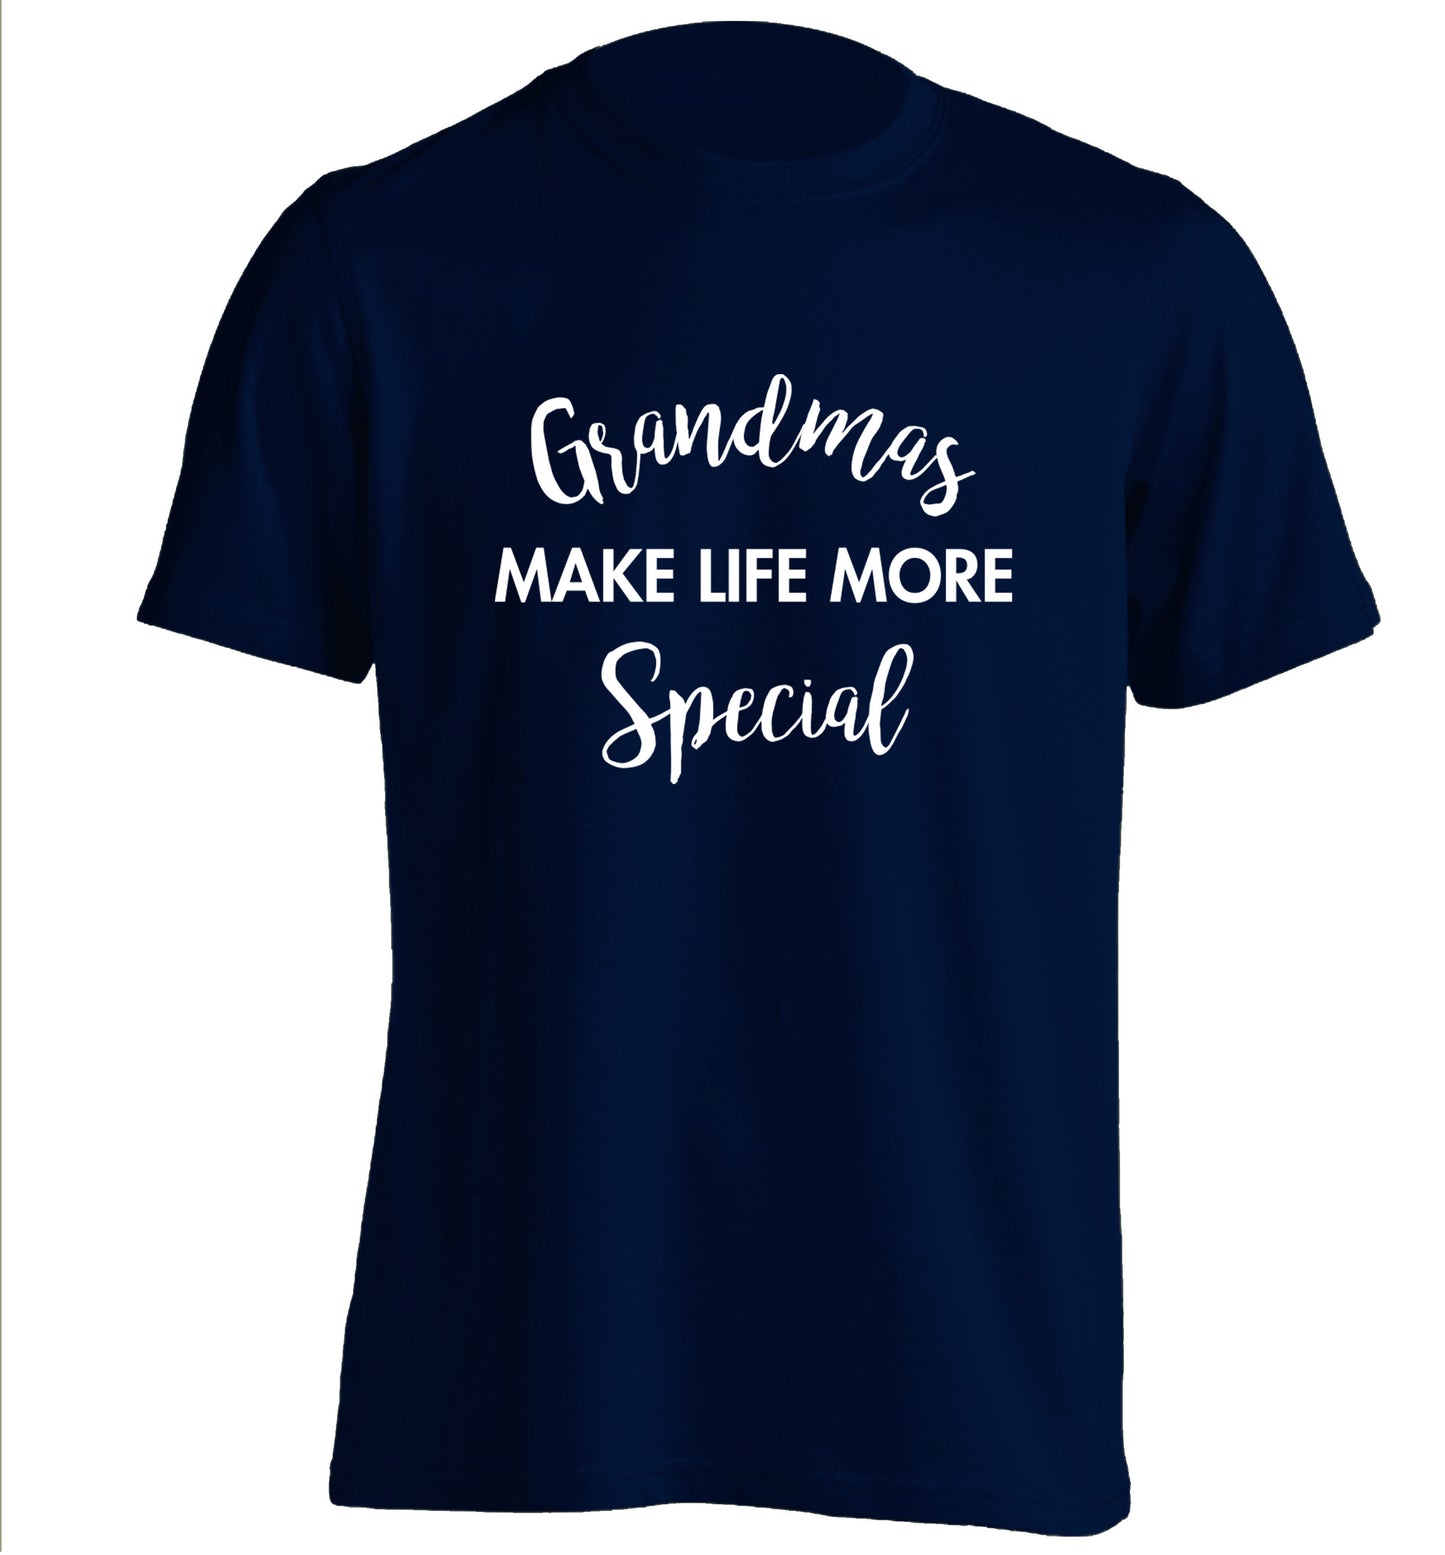 Grandmas make life more special adults unisex navy Tshirt 2XL